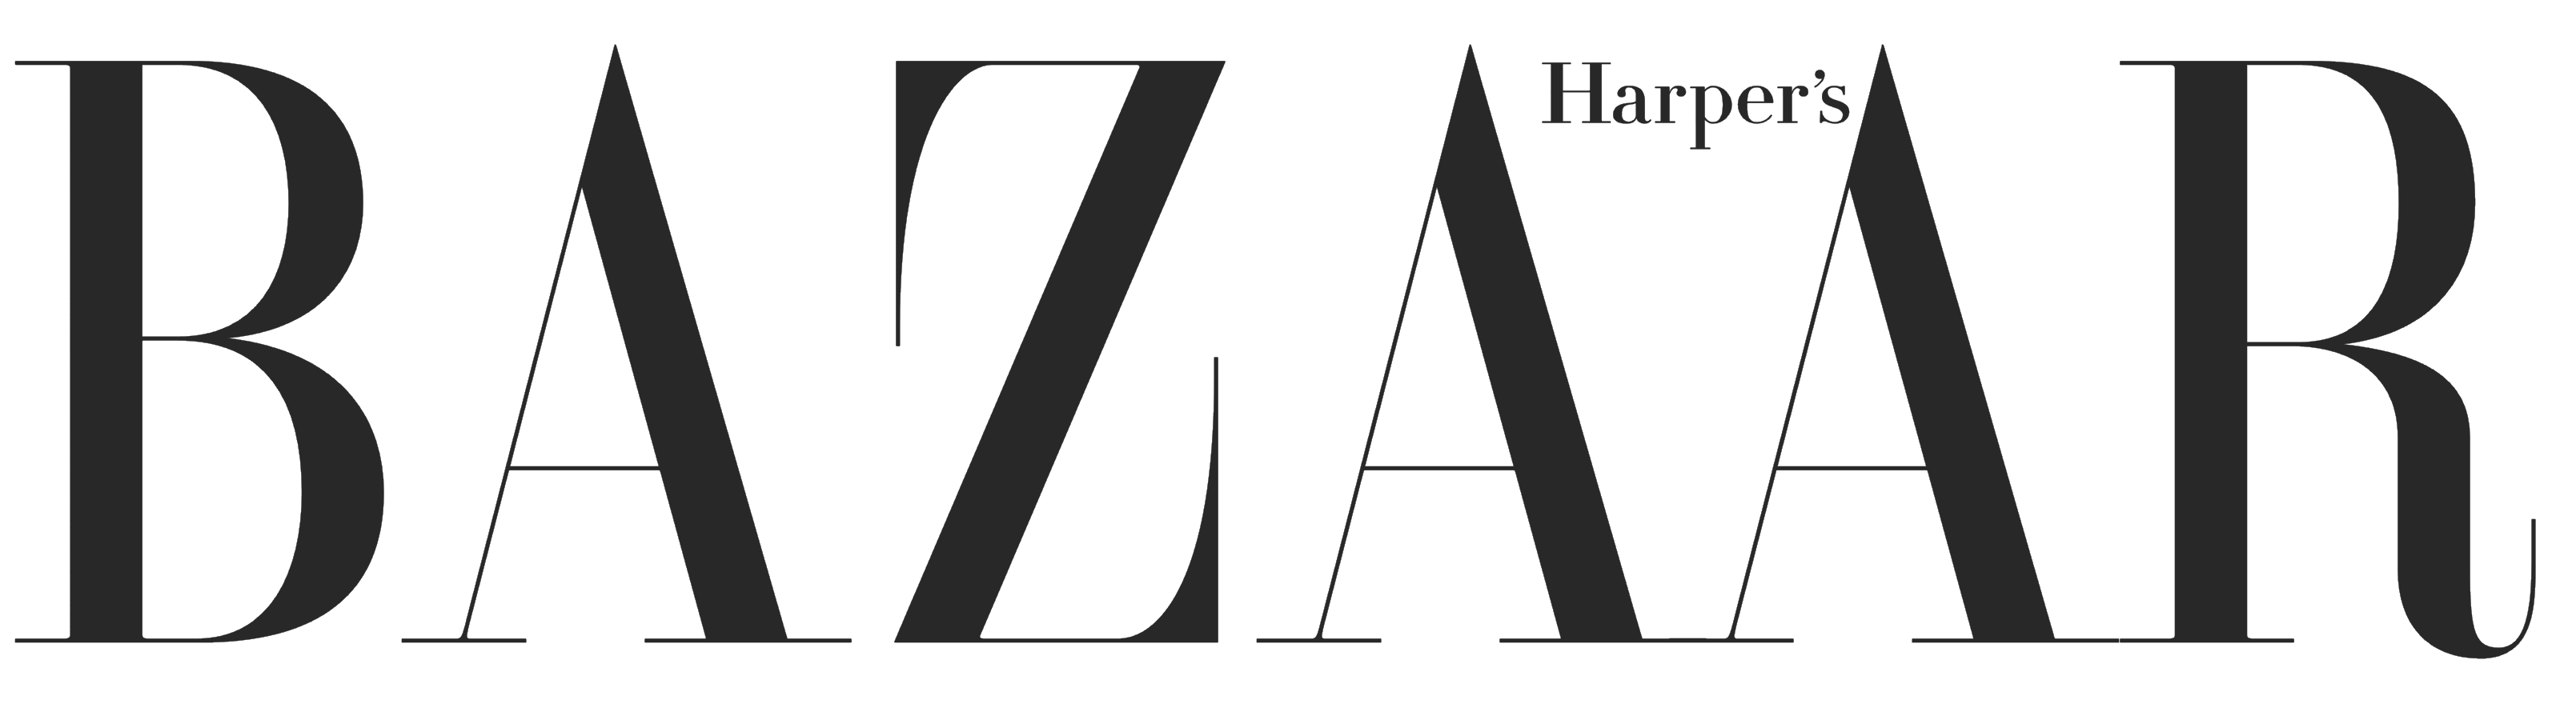 Harpers_Bazaar_logo_logotype